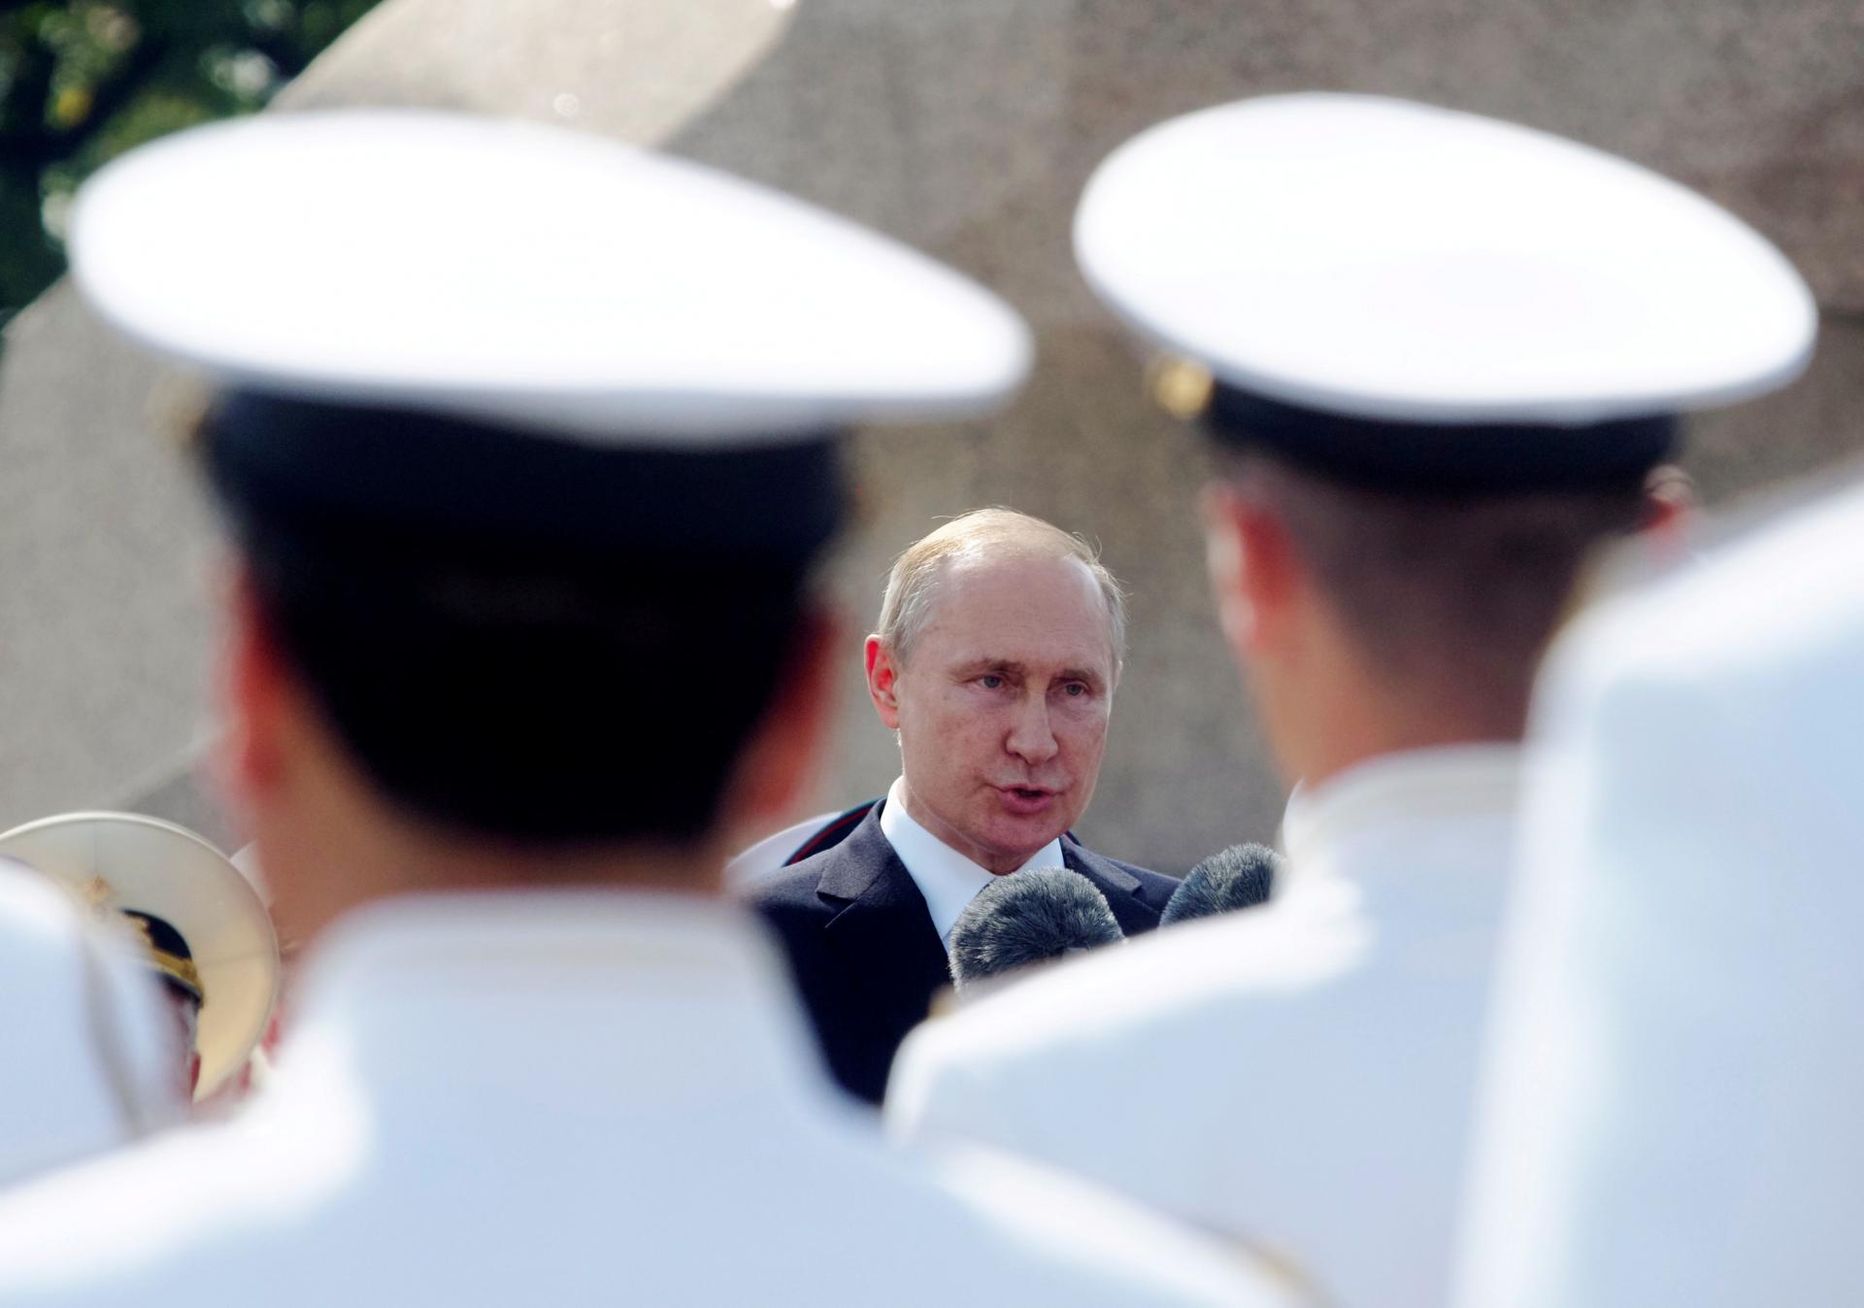 Venemaa president Vladimir Putin võidupüha paraadil sõduritele tervituskõnet pidamas.